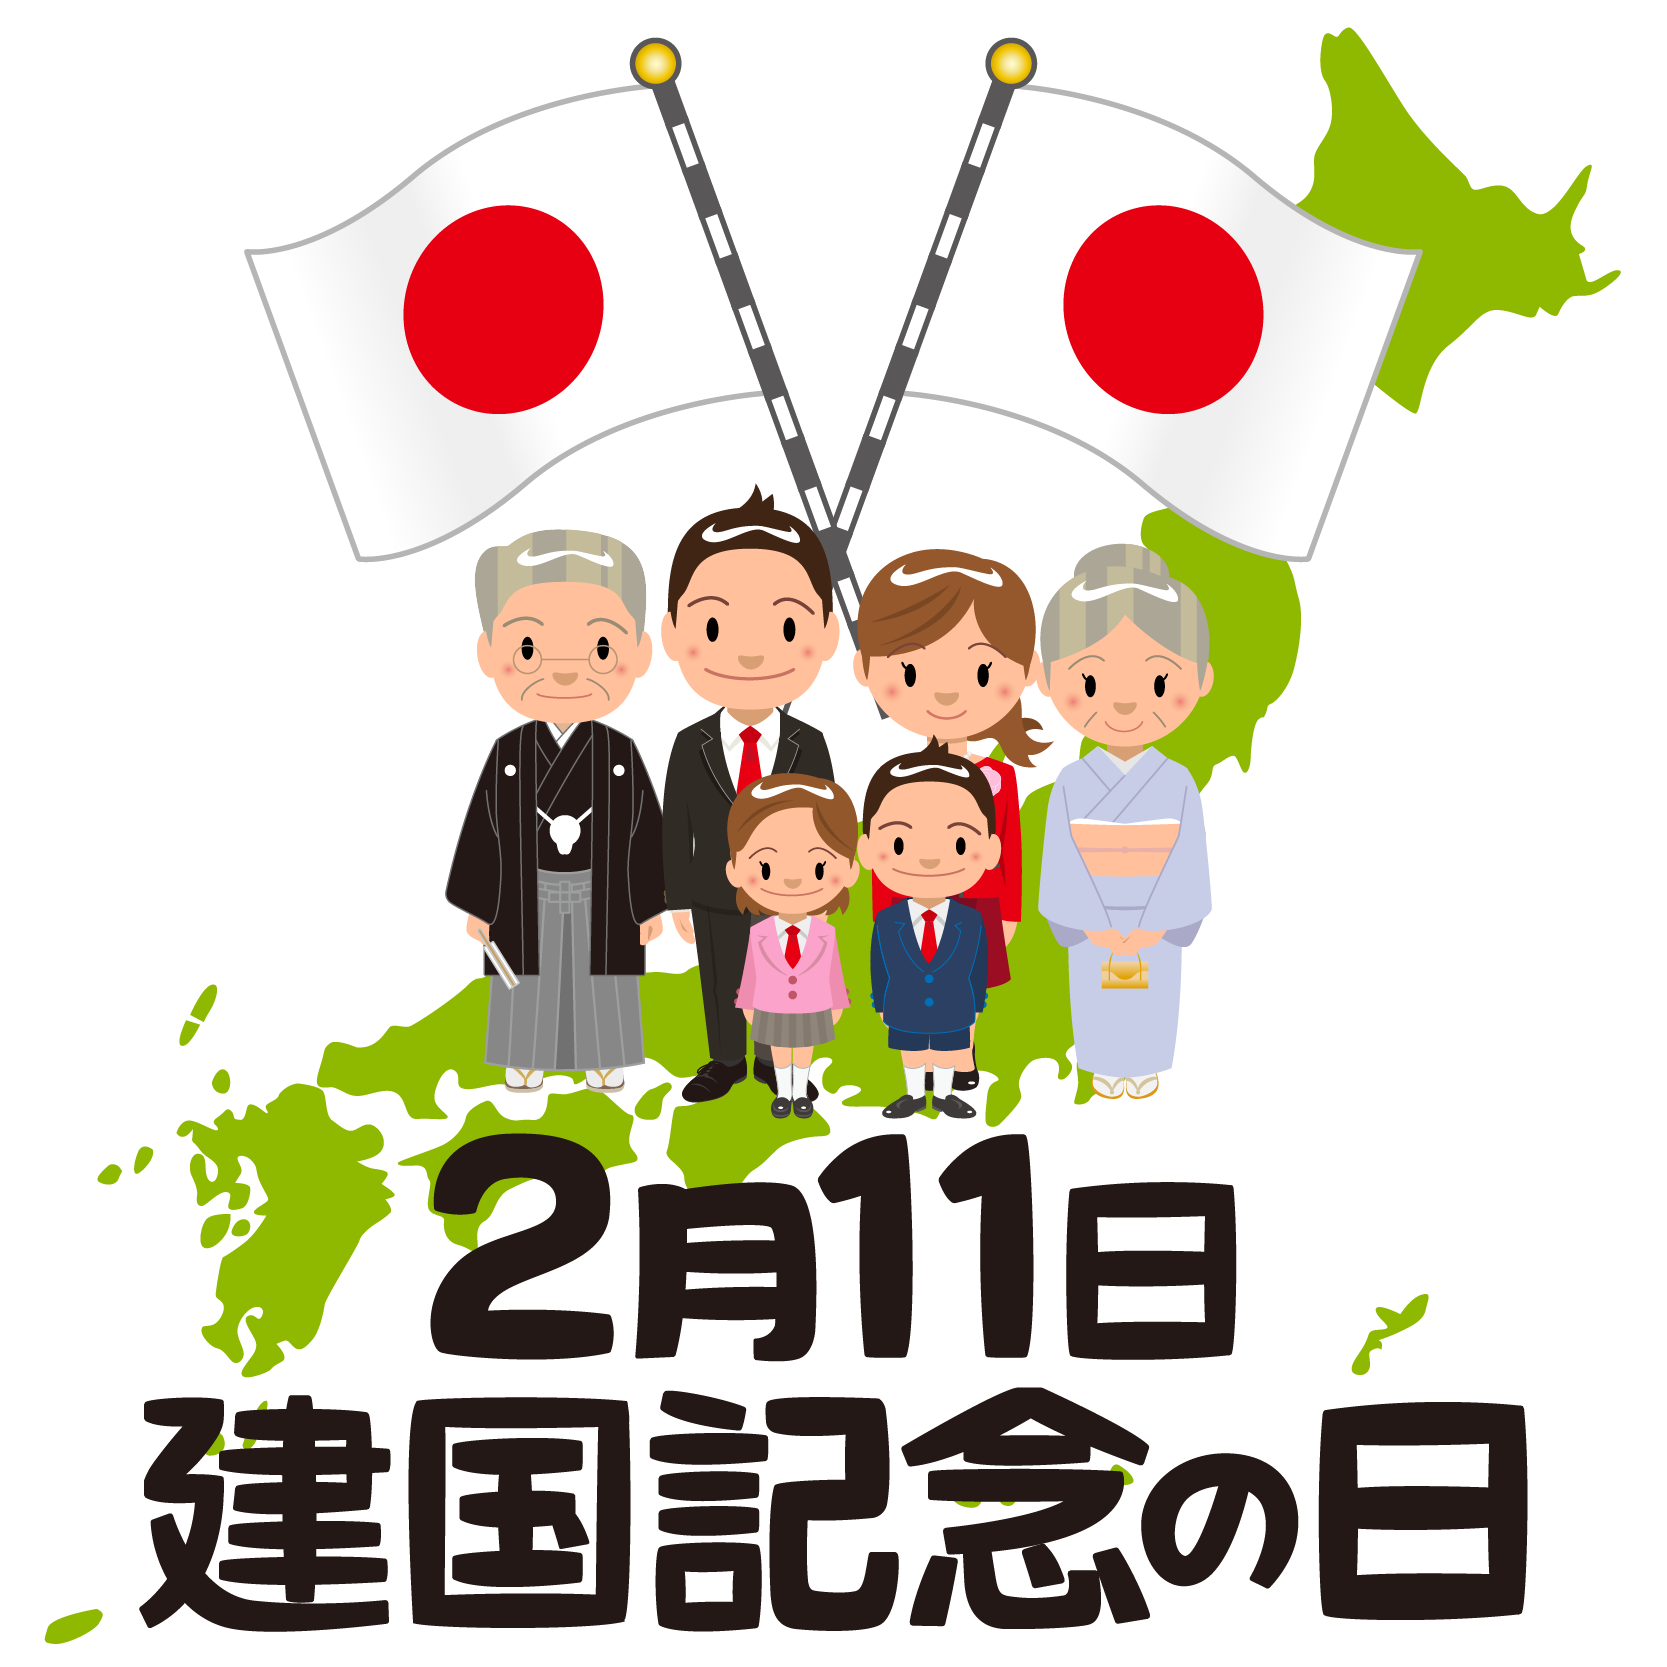 商用フリー・無料イラスト_建国記念日_japan_National Foundation Day027 | 商用OK!フリー素材集「ナイスなイラスト」